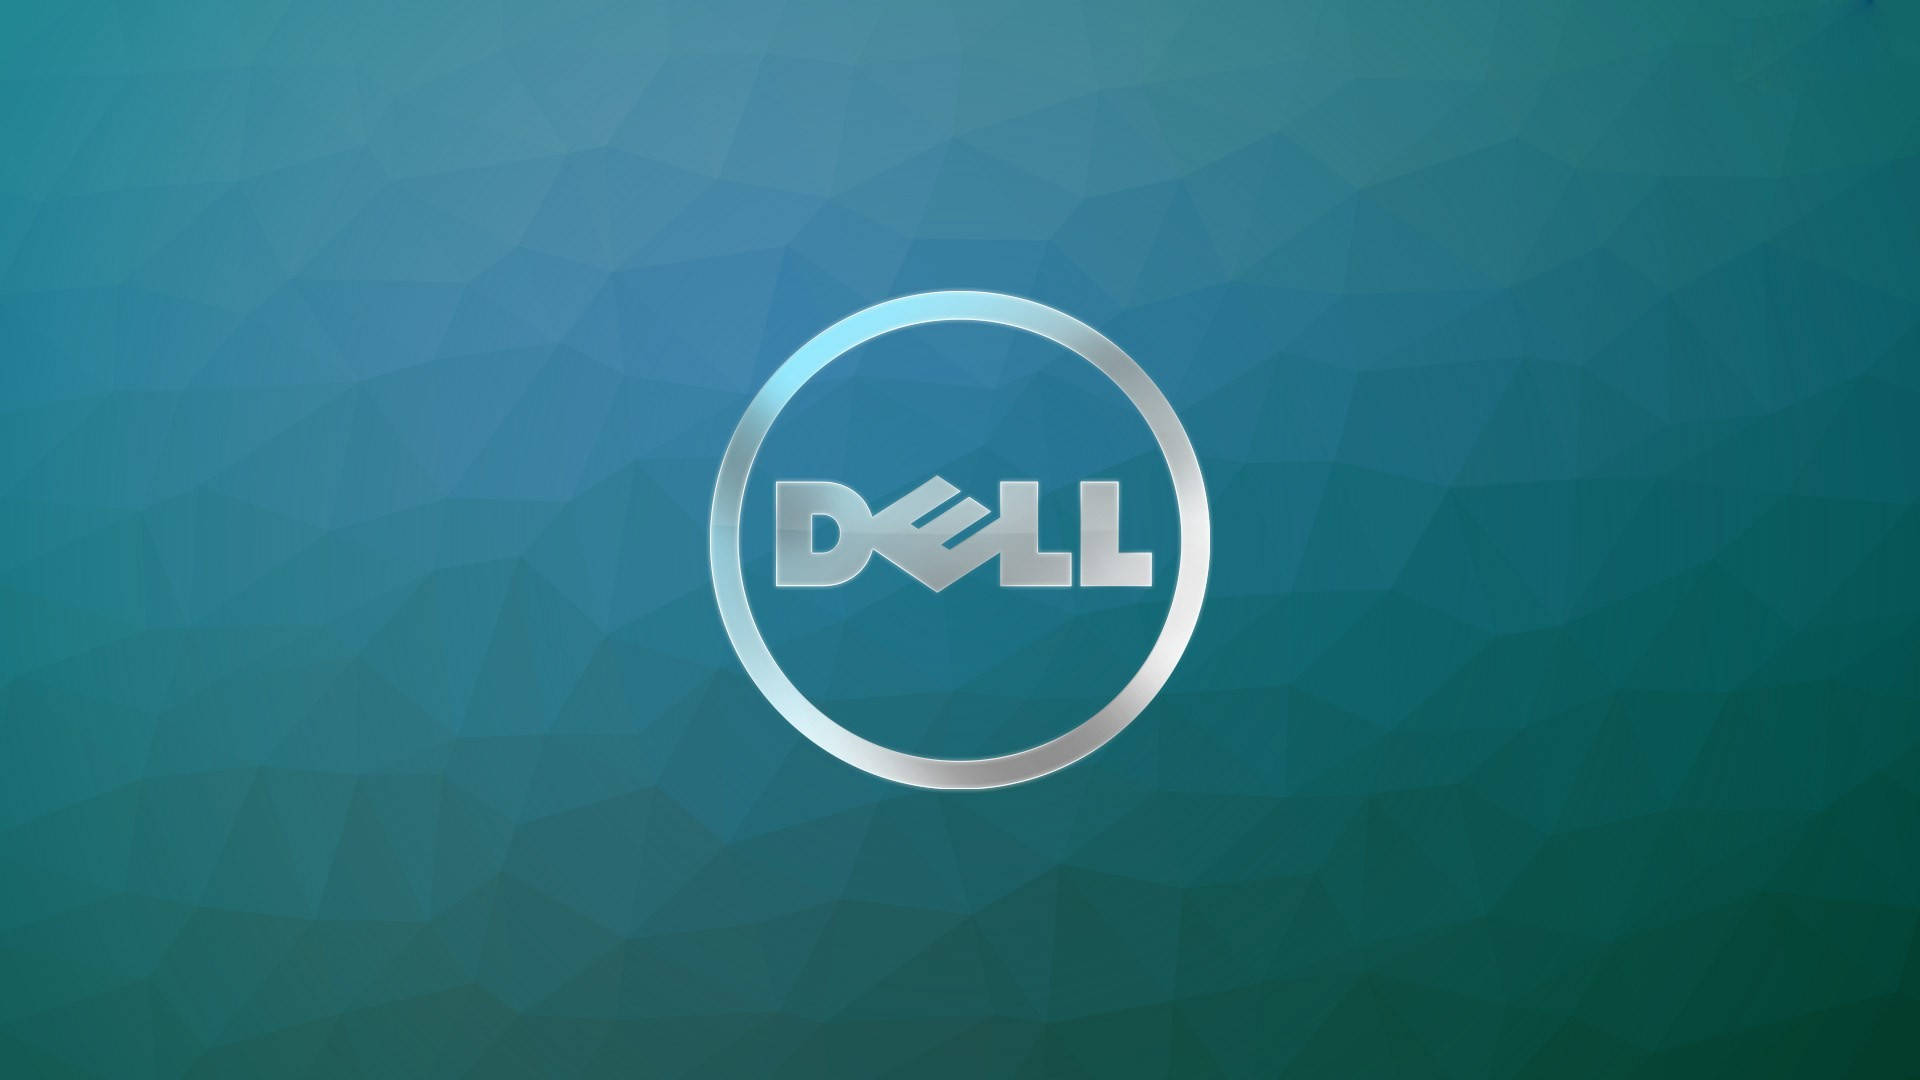 Silver Dell HD Logo strækker sig ud over hele skærmen. Wallpaper